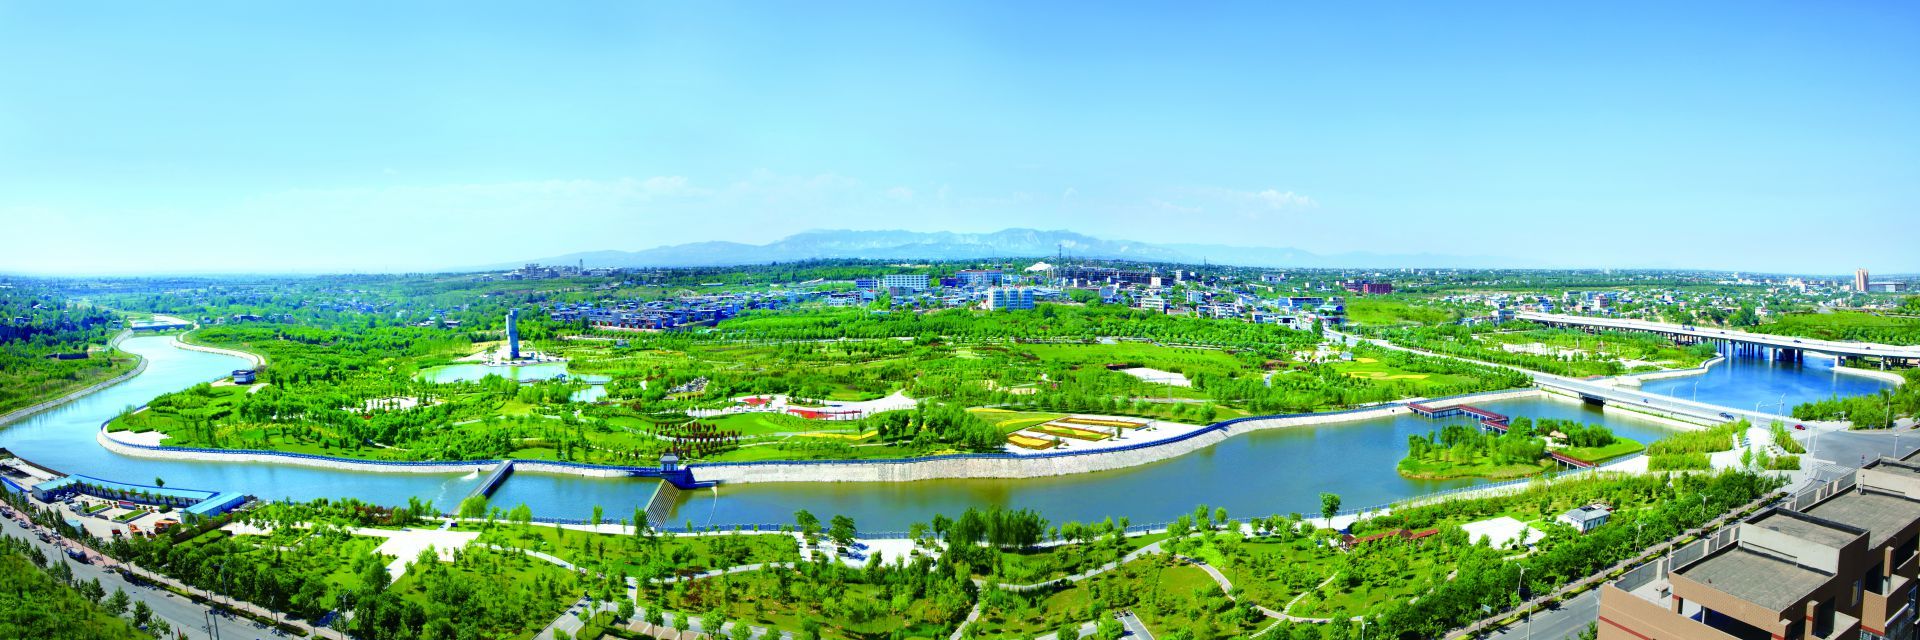 富平县全景图图片